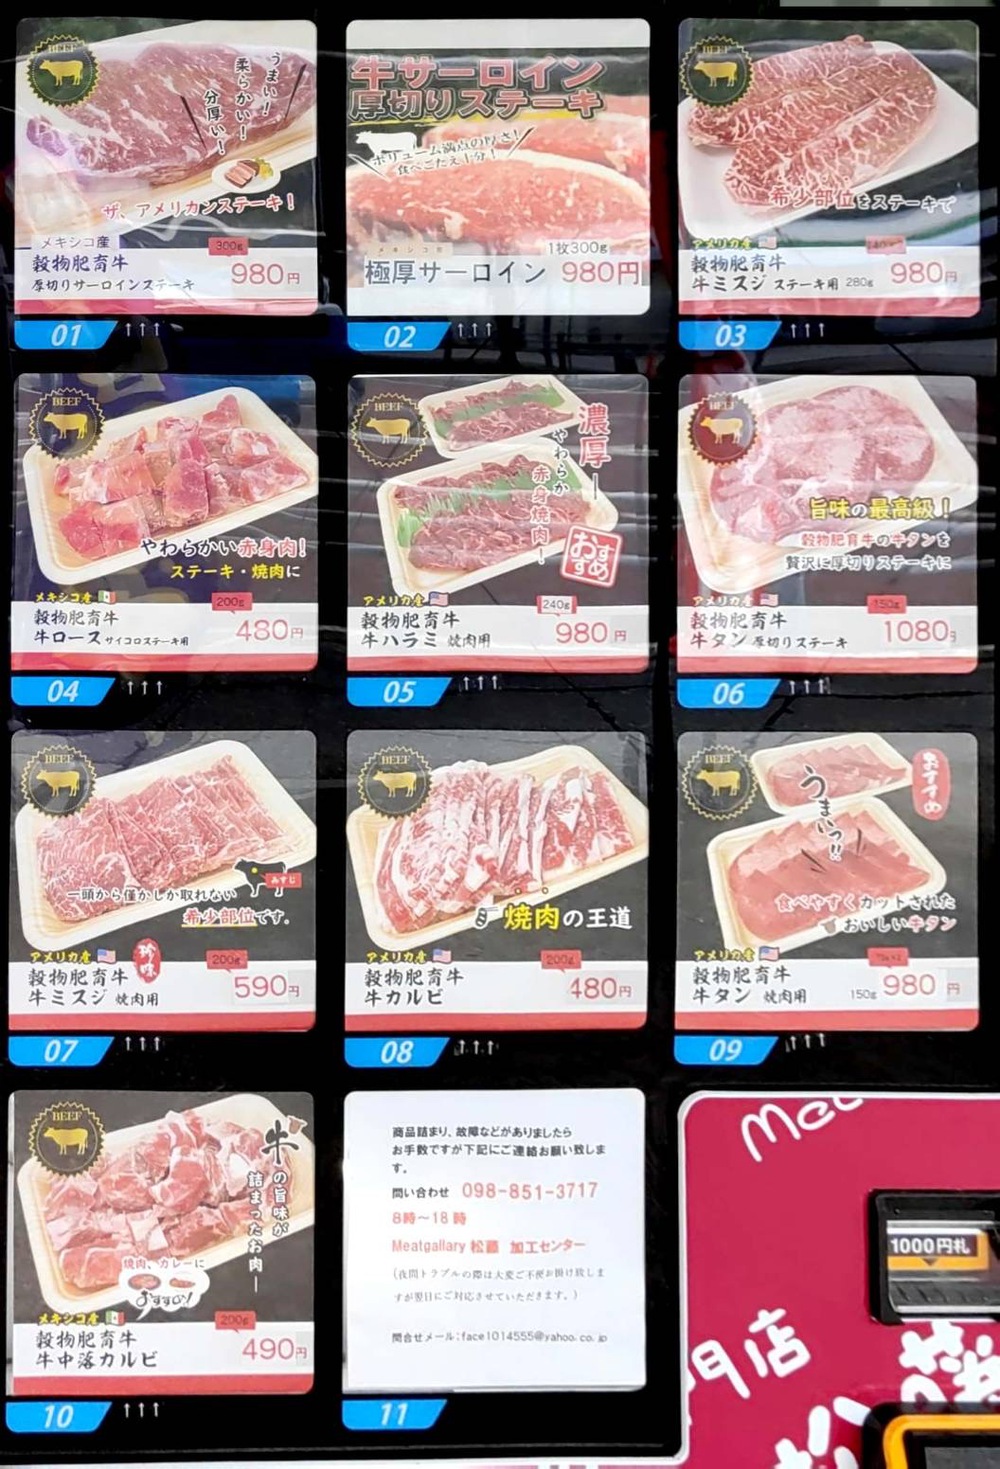 【セール中】お肉自販機として県内最大の設置【松藤ど冷えもん】